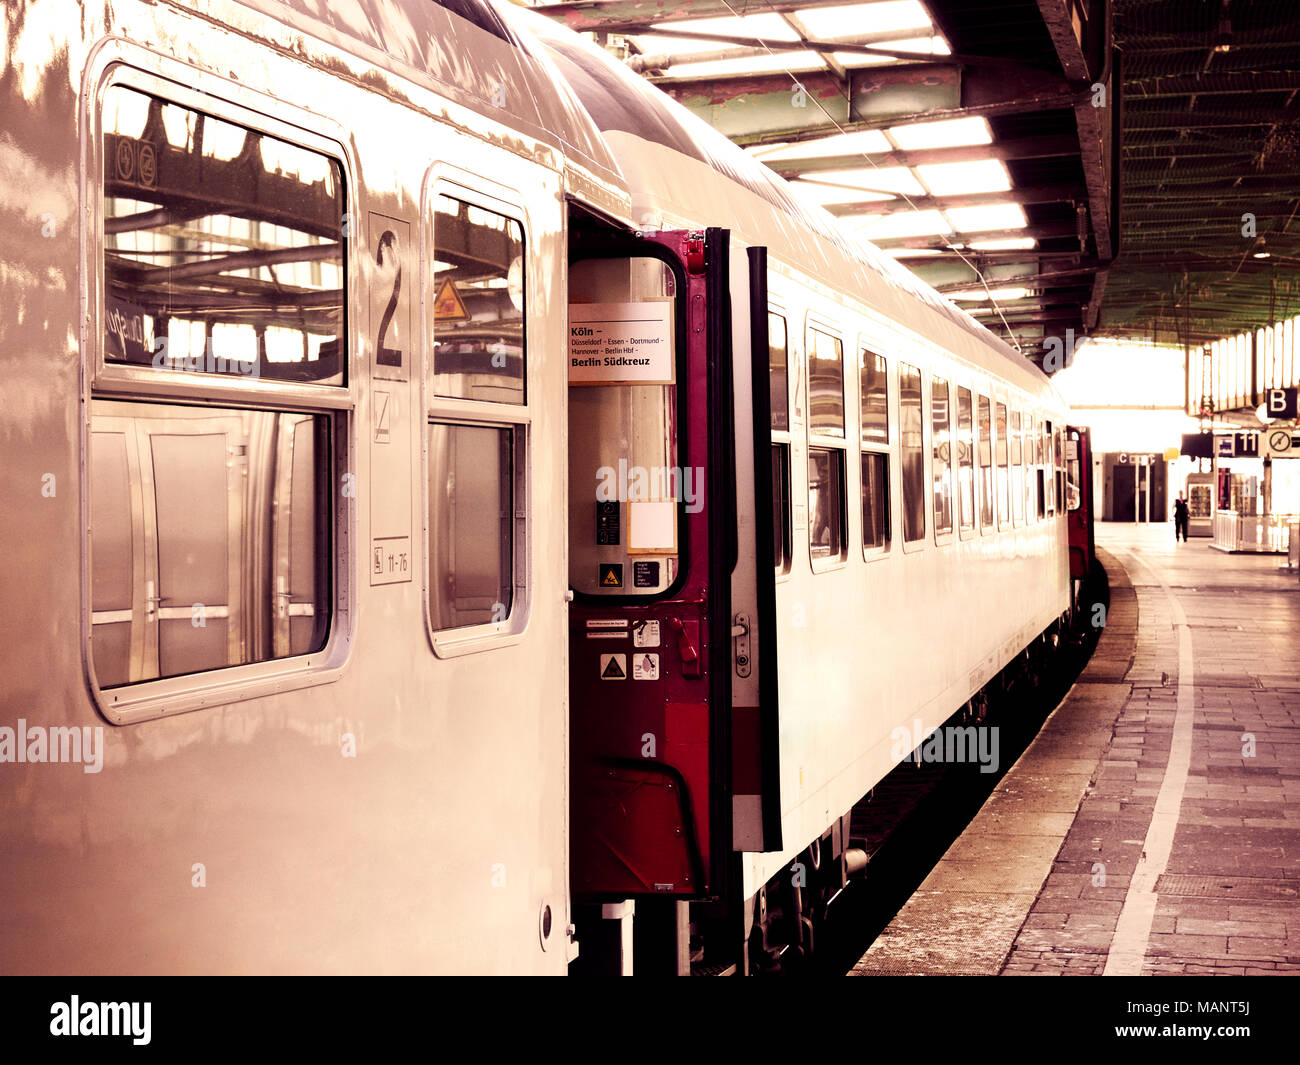 Alte Zug in einen Bahnhof mit offenen Türen. Sepia getonten Bild. Stockfoto